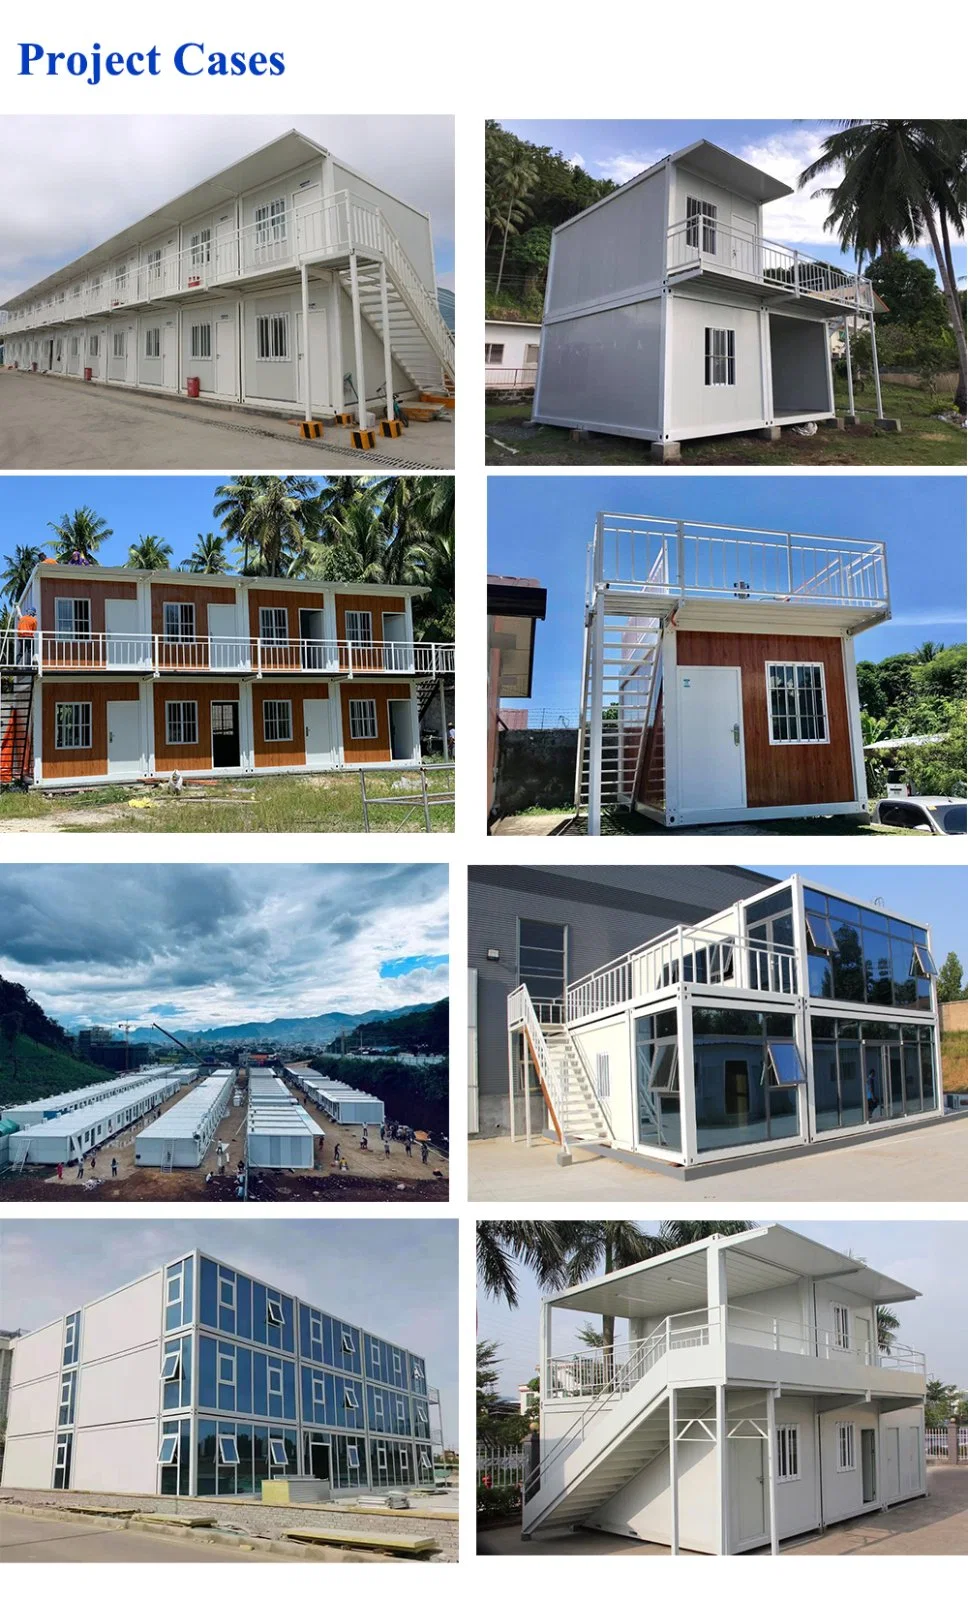 2 Etagen Günstige Low Cost Hohe Qualität/hohe Kostenleistung Mobile Modular Homes Stahlkonstruktion Personalisieren Container House Prefab Office Fertigbau